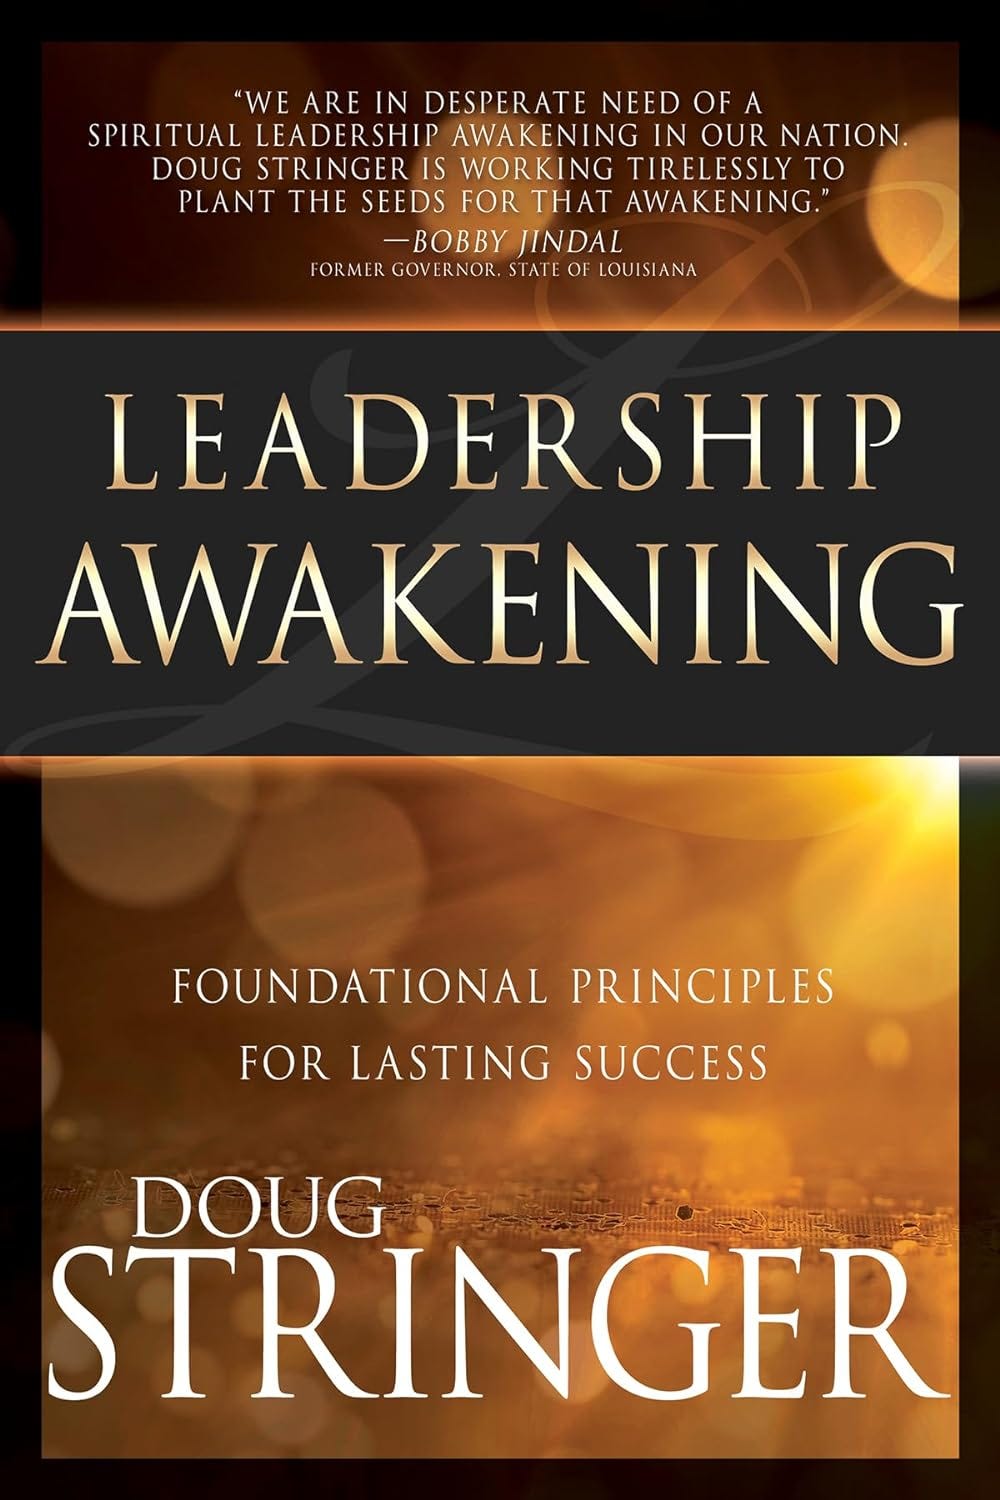 Image of book cover for Leadership Awakening by Doug Stringer.